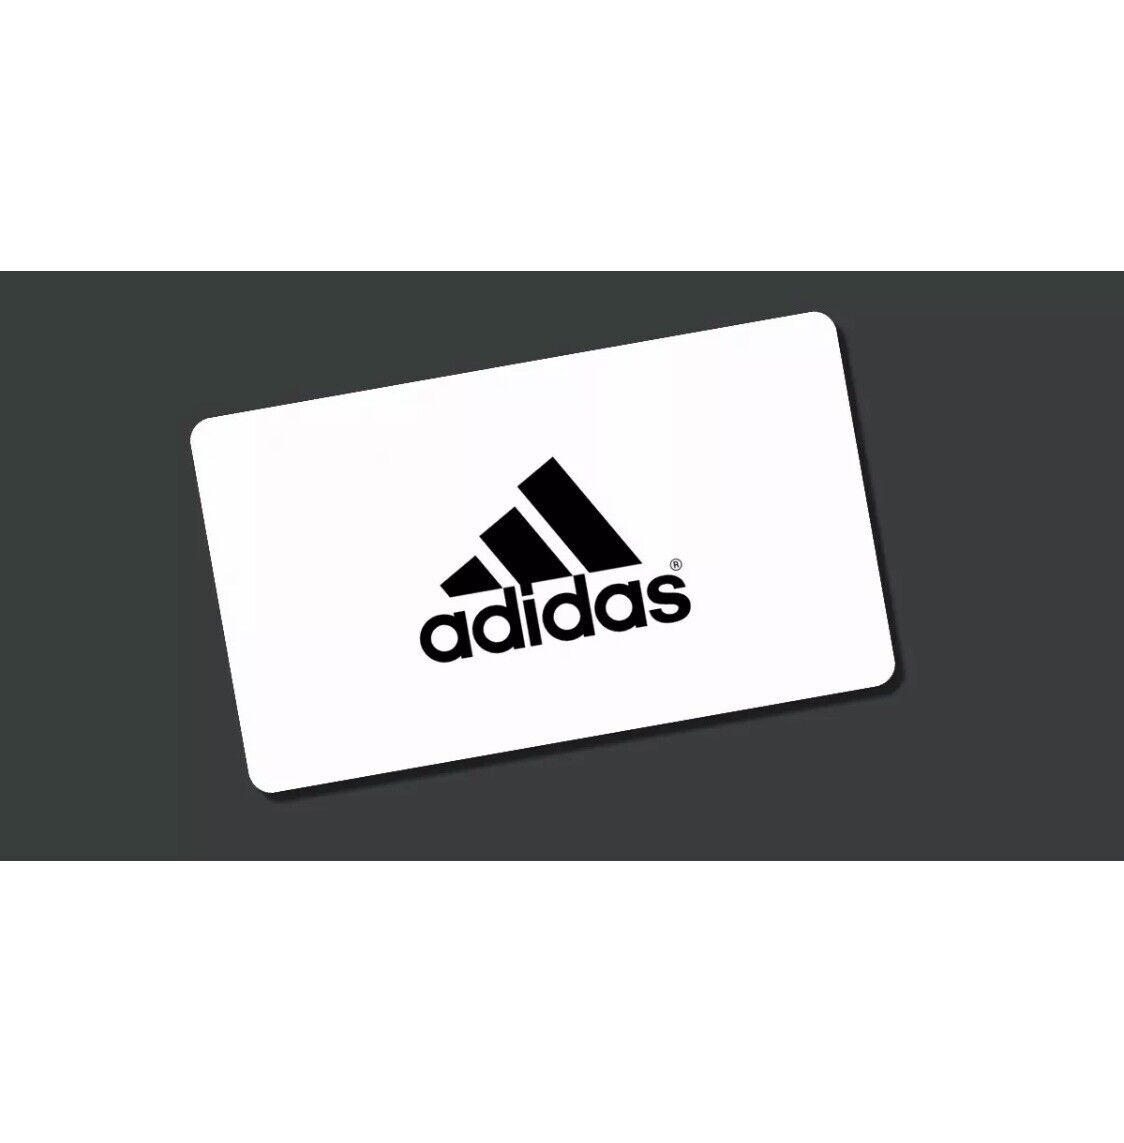 Adidas 40% Rabattcode / Rabattgutschein (App oder Website)